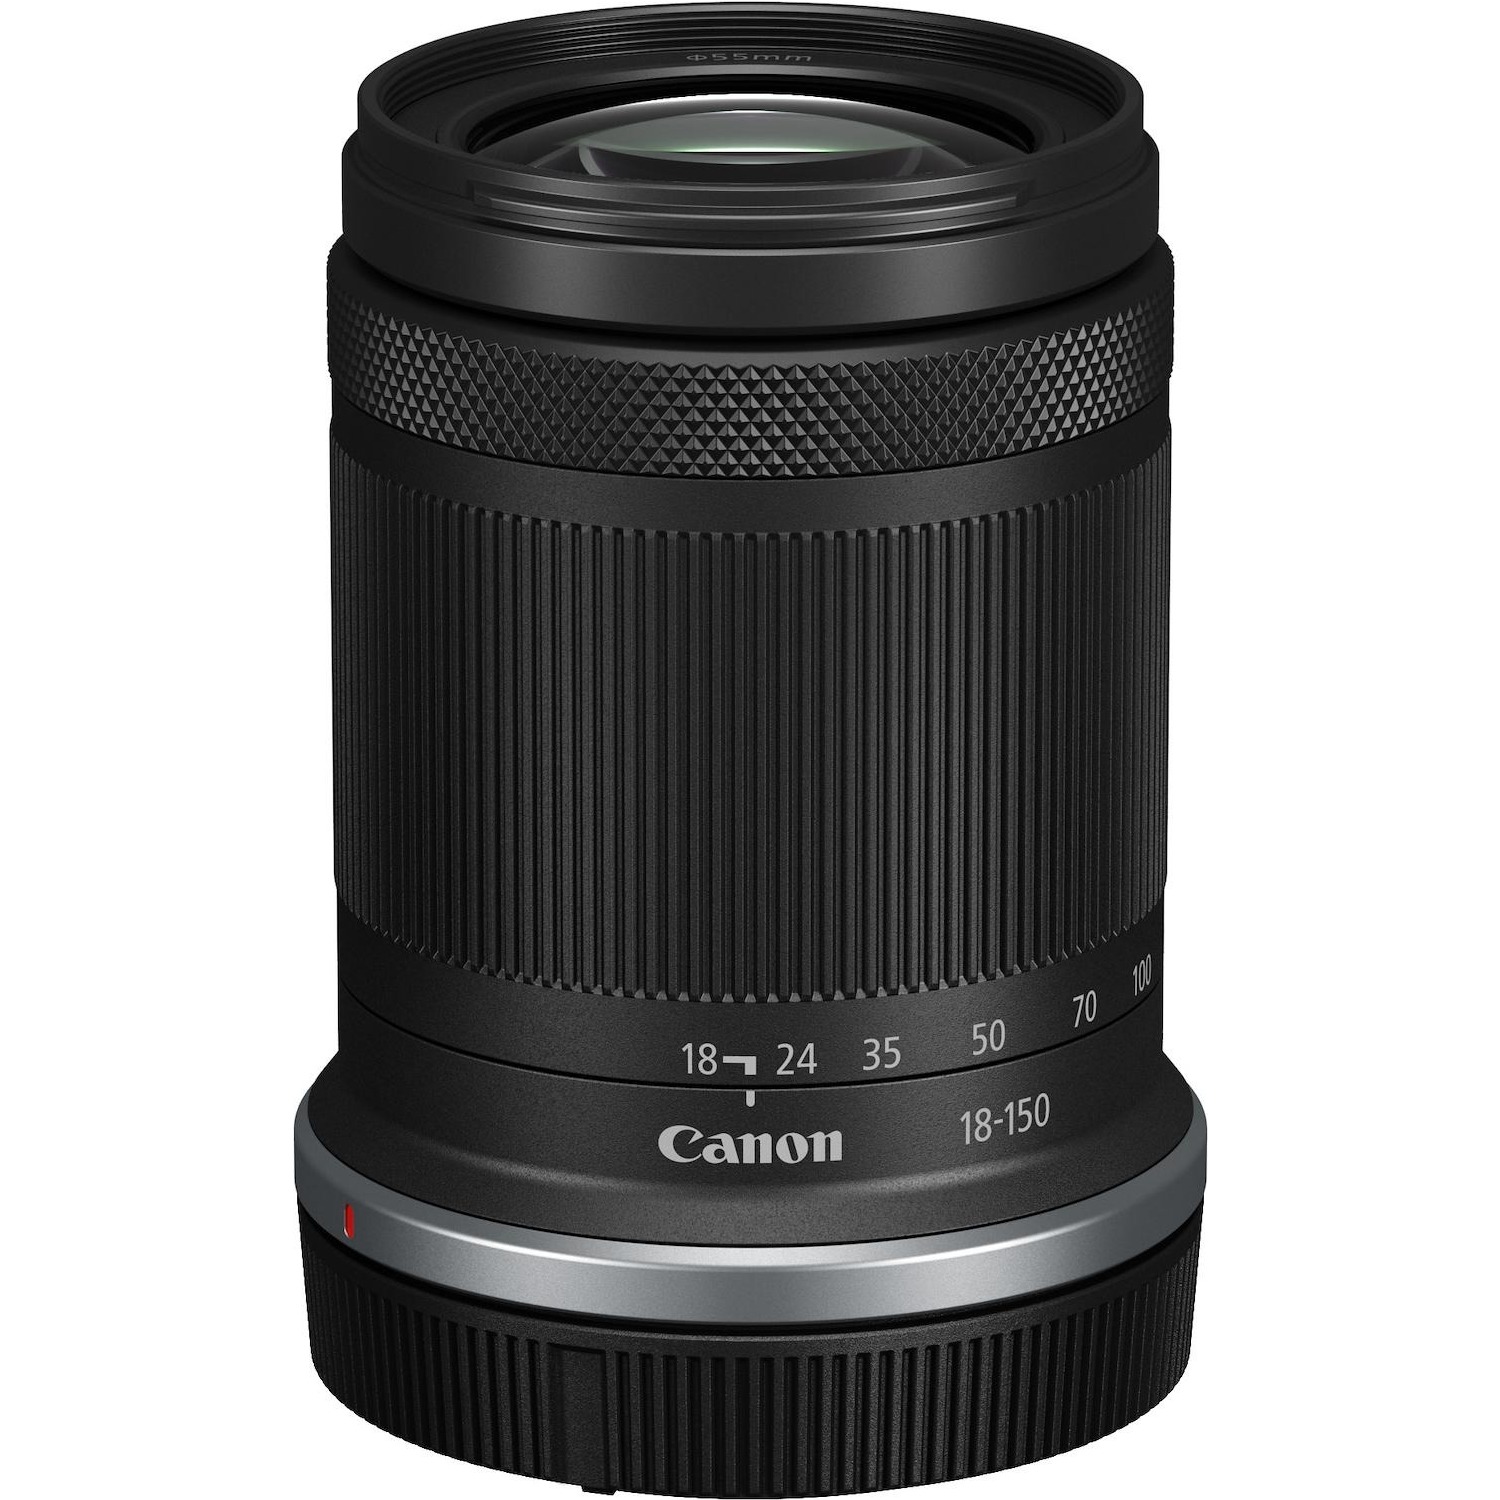 Immagine per Obiettivo Canon 18-150mm f/3.5-6.3 IS STM da DIMOStore